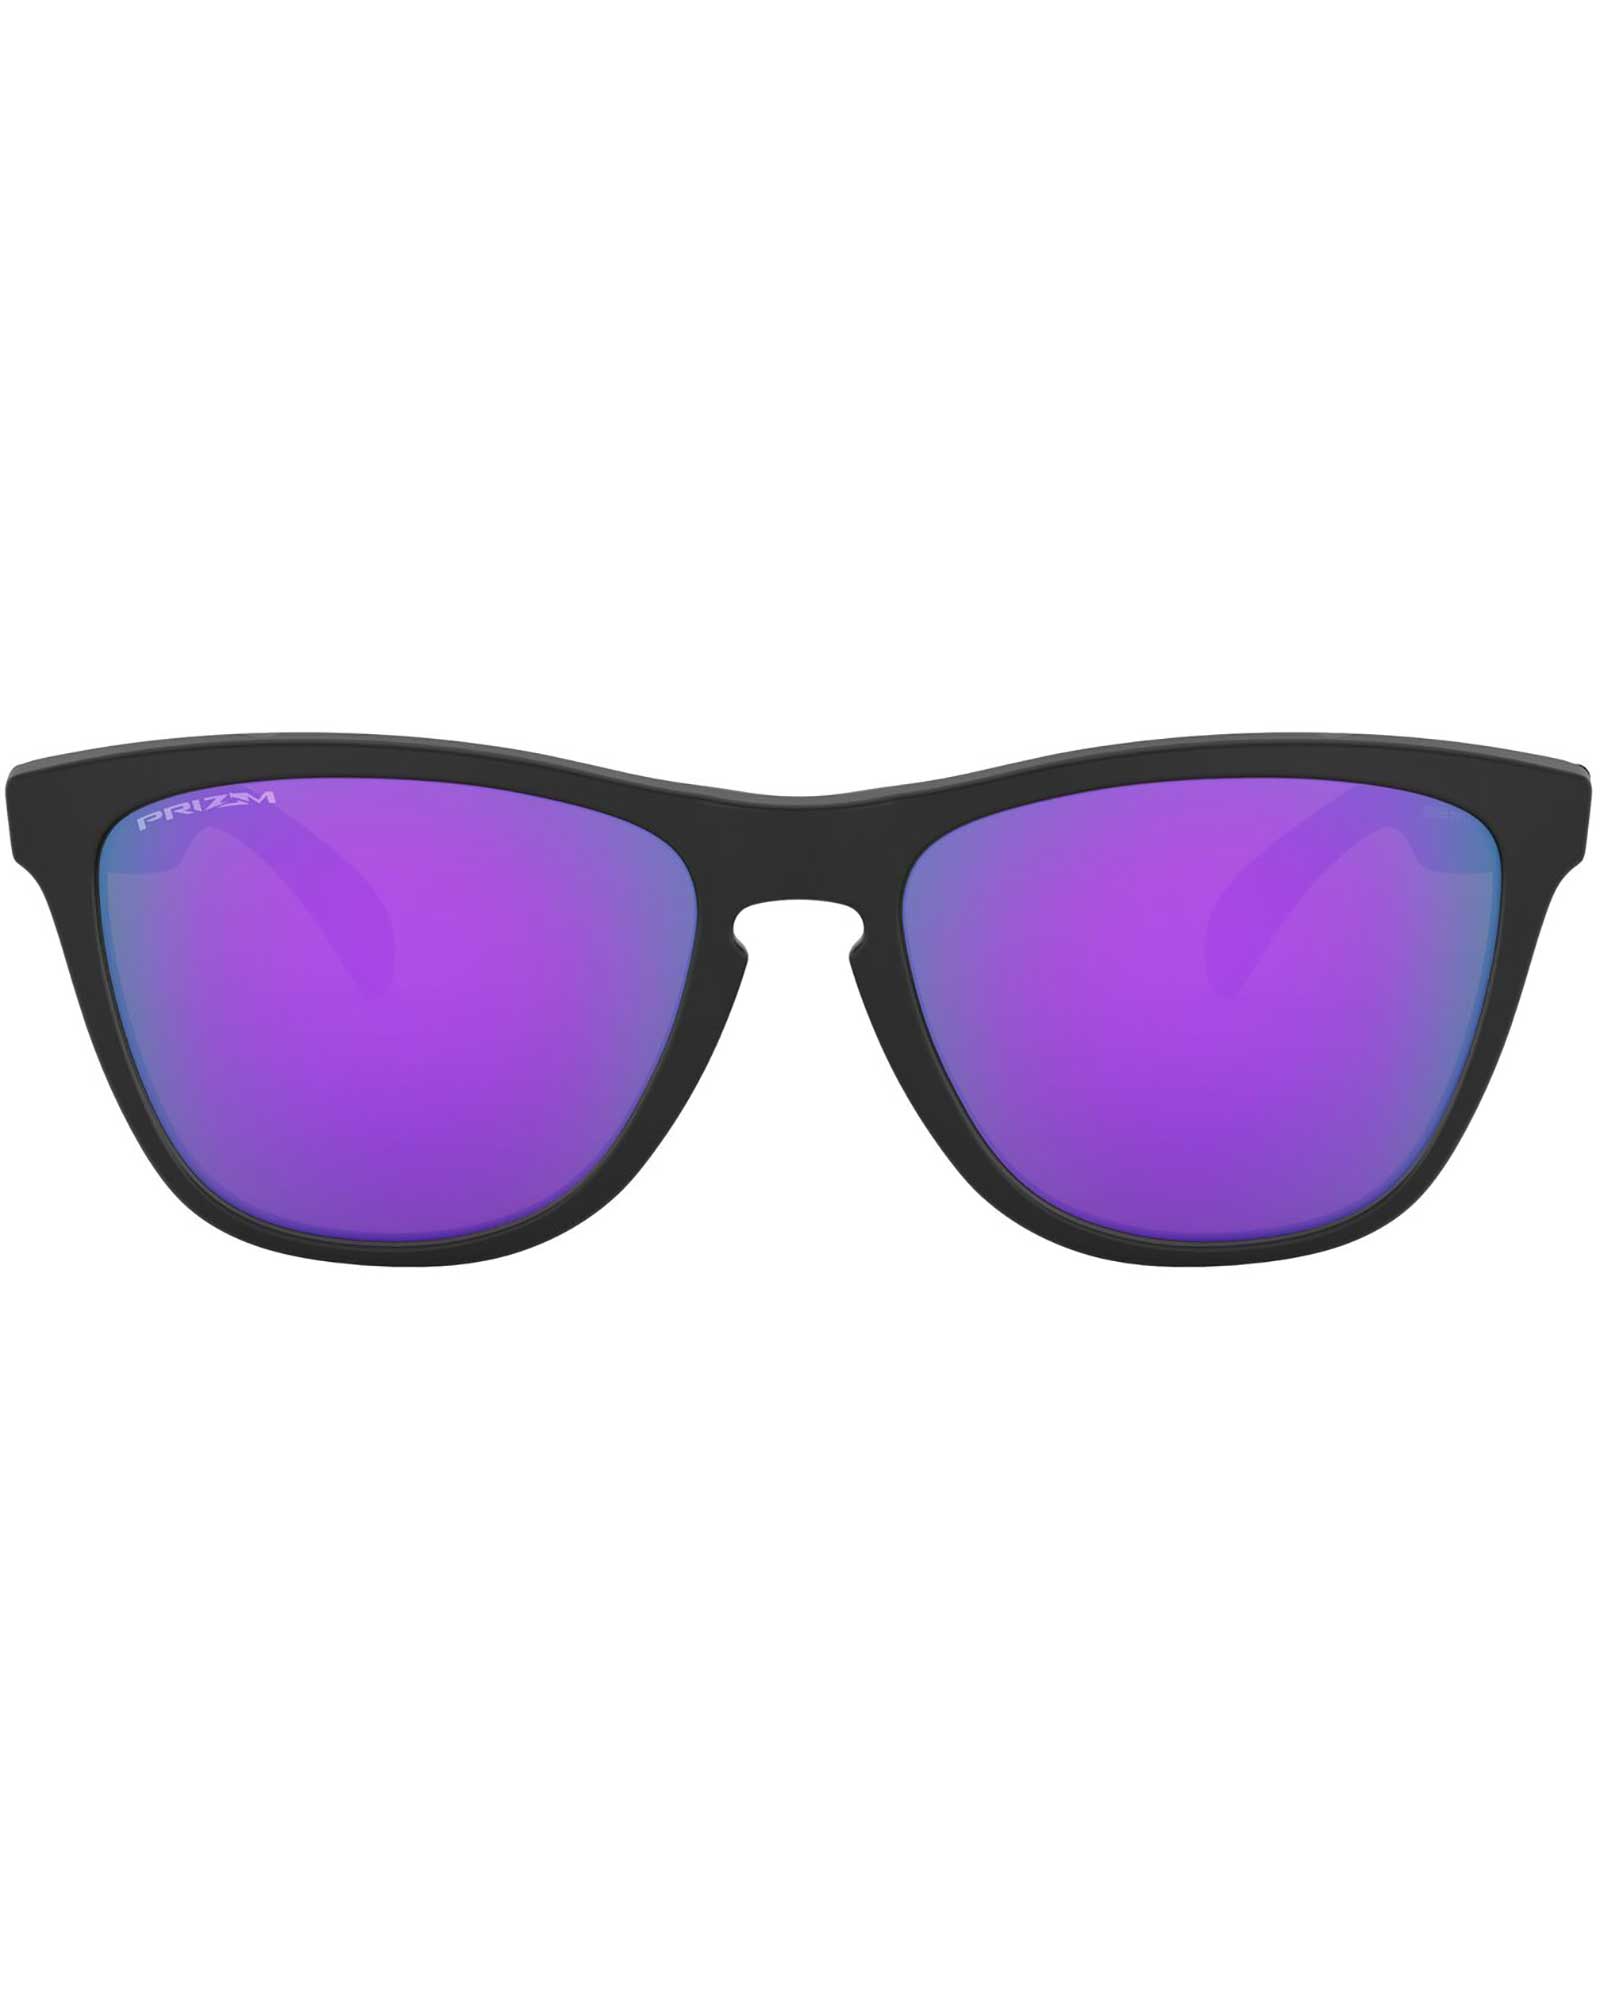 Oakley Frogskins Matte Black / Prizm Violet Sunglasses - Matte Black